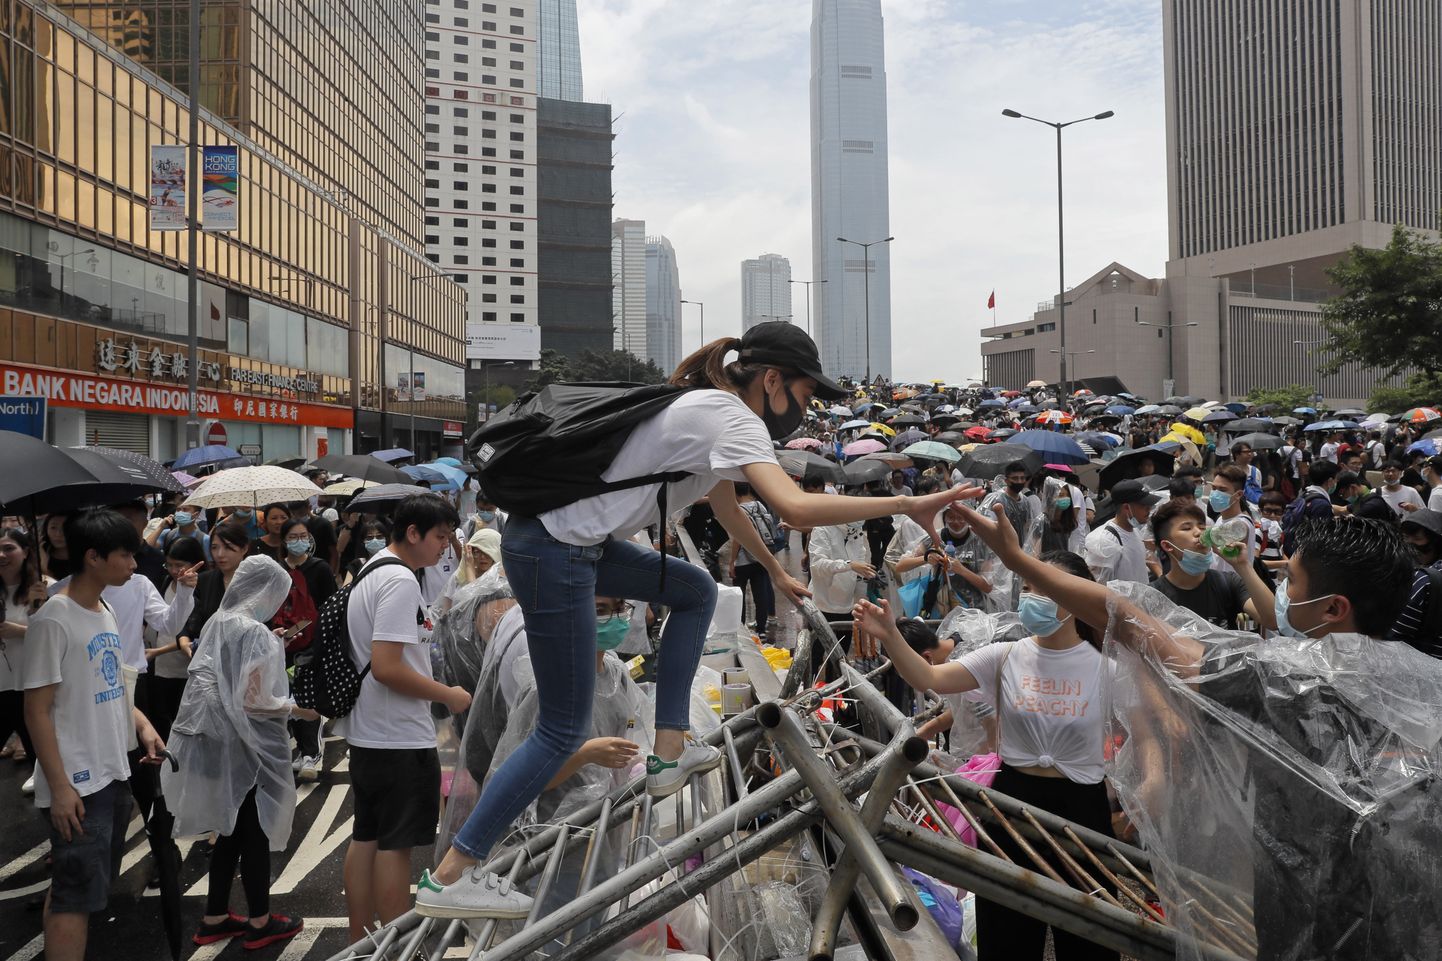 12 июня в Гонконге состоялся протест с целью сохранить автономию города.